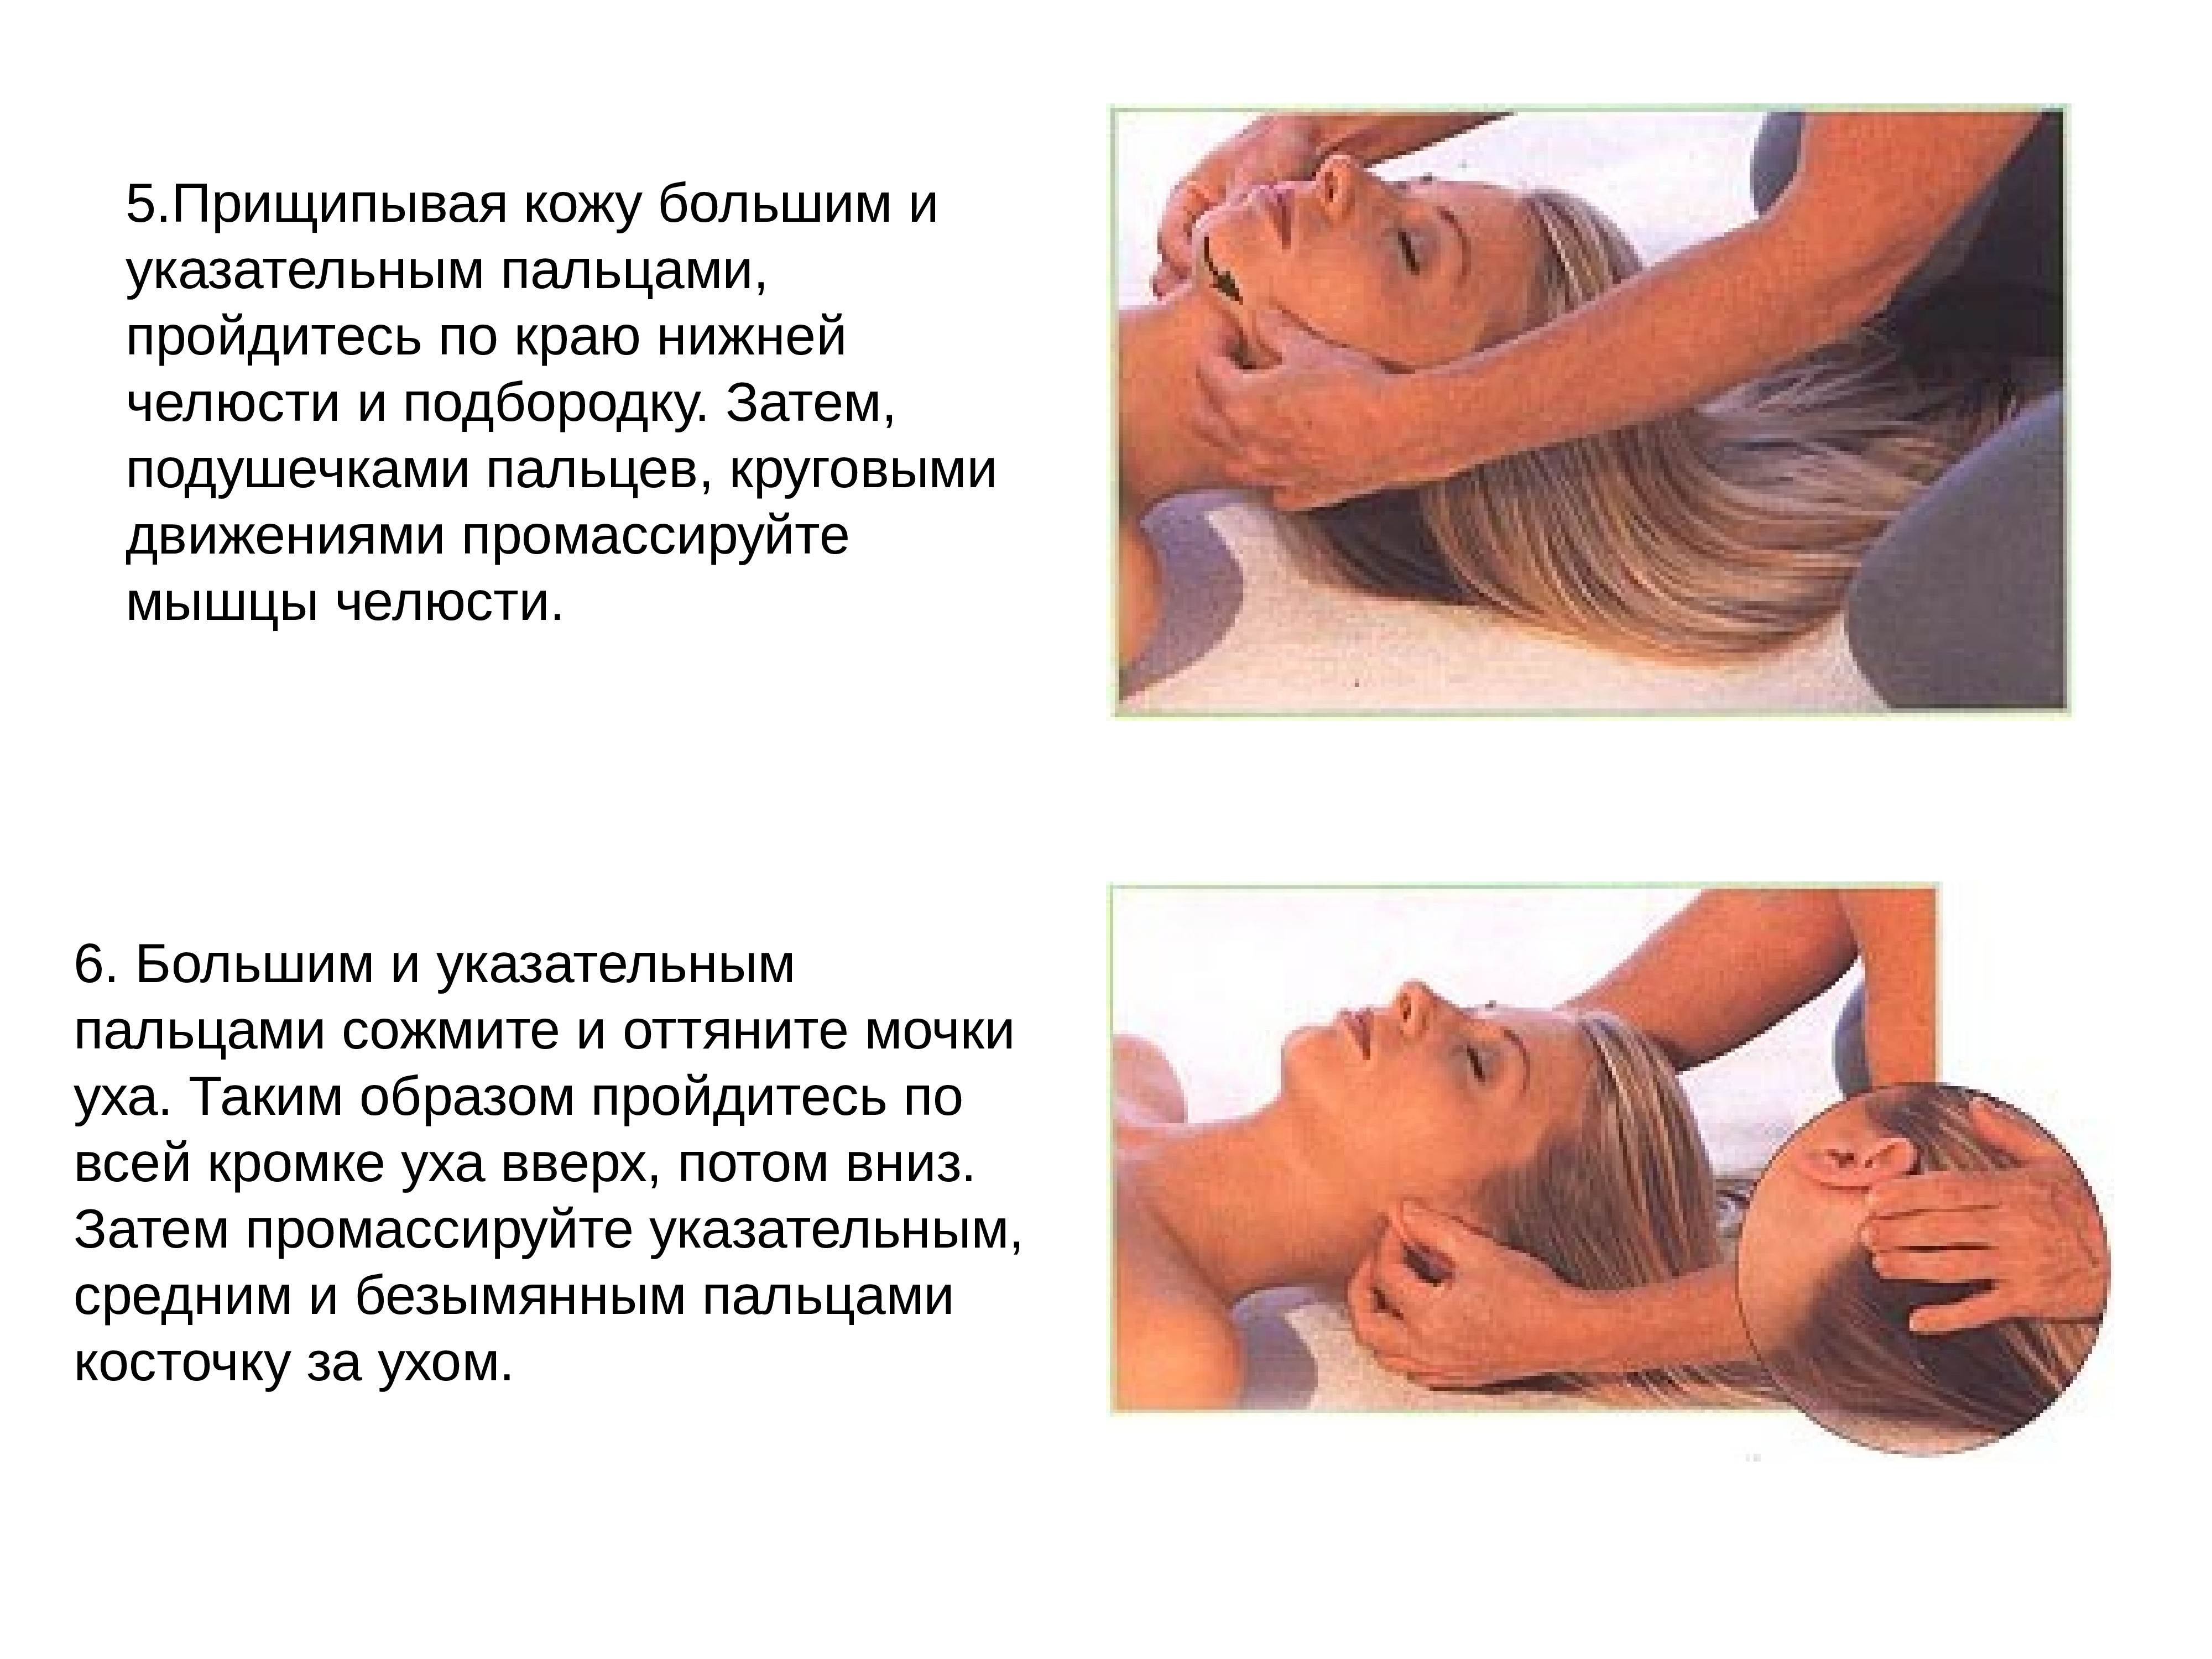 Массажные действия. Общий гигиенический массаж. Гигиенический массаж лица. Гигиенический массаж презентация. Общий массаж гигиена.